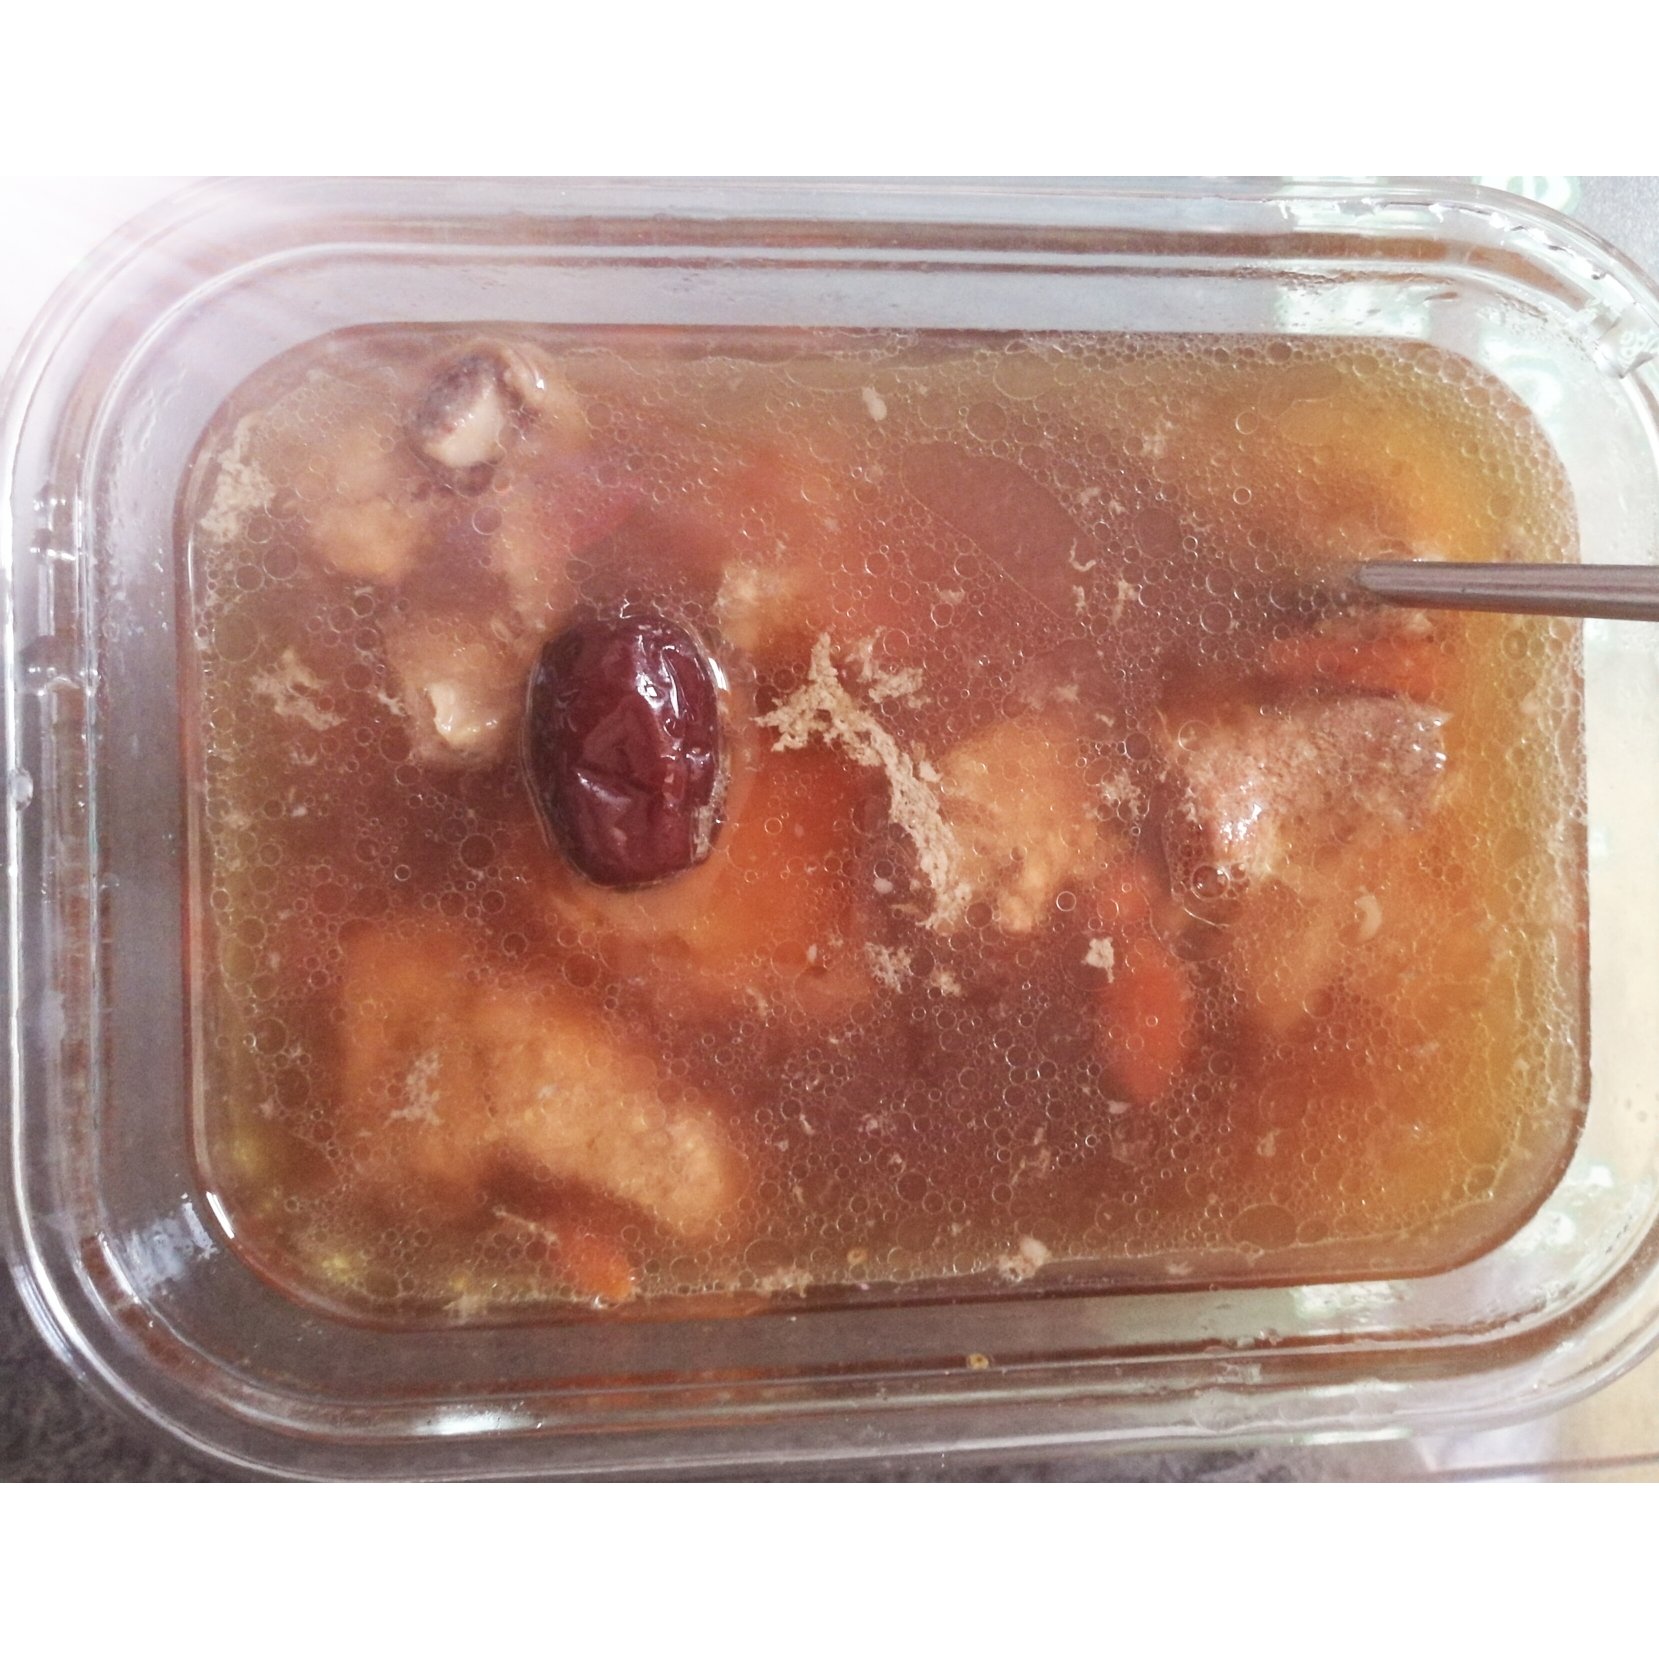 花生红枣排骨汤